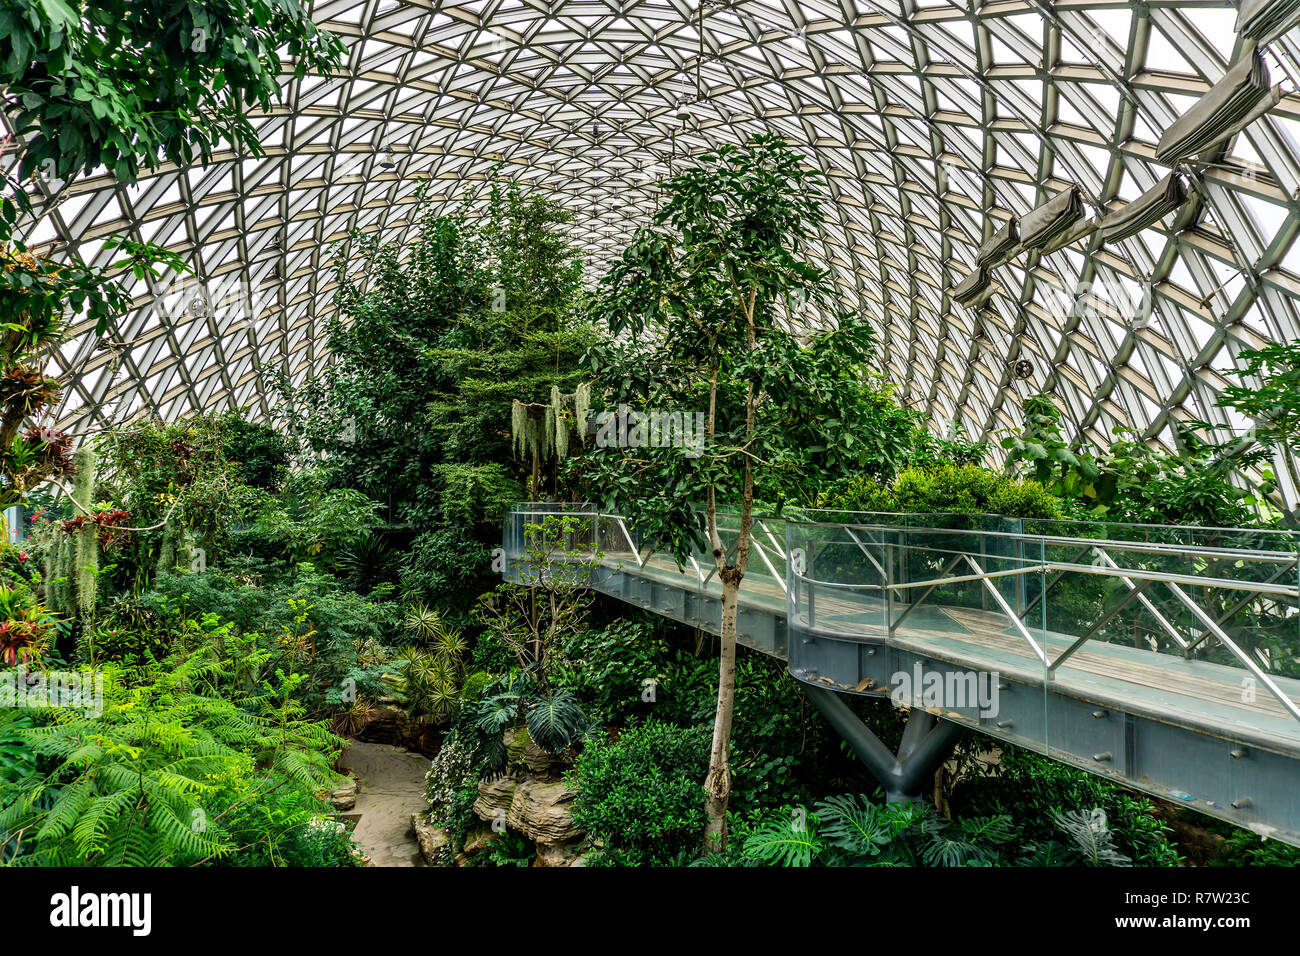 China Shanghai Botanischer Garten Gewächshaus feuchten subtropischen Klima  Pflanzen und Bäume Stockfotografie - Alamy